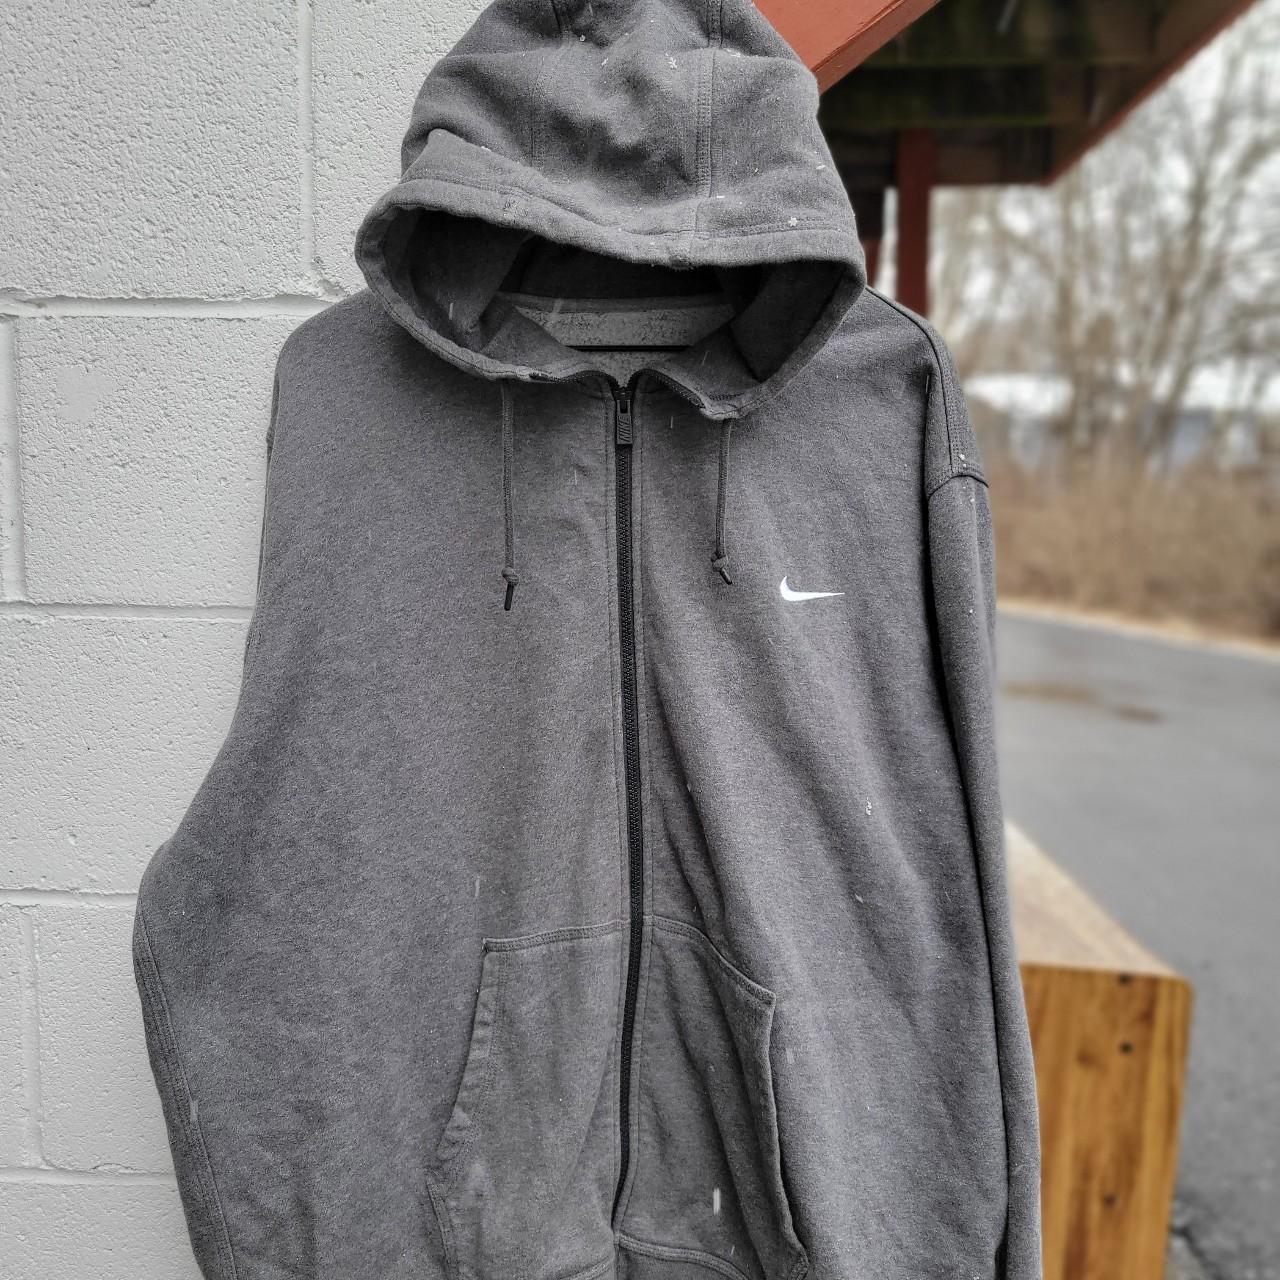 Vintage 90s to early 00s Full zip Nike hoodie. Sick